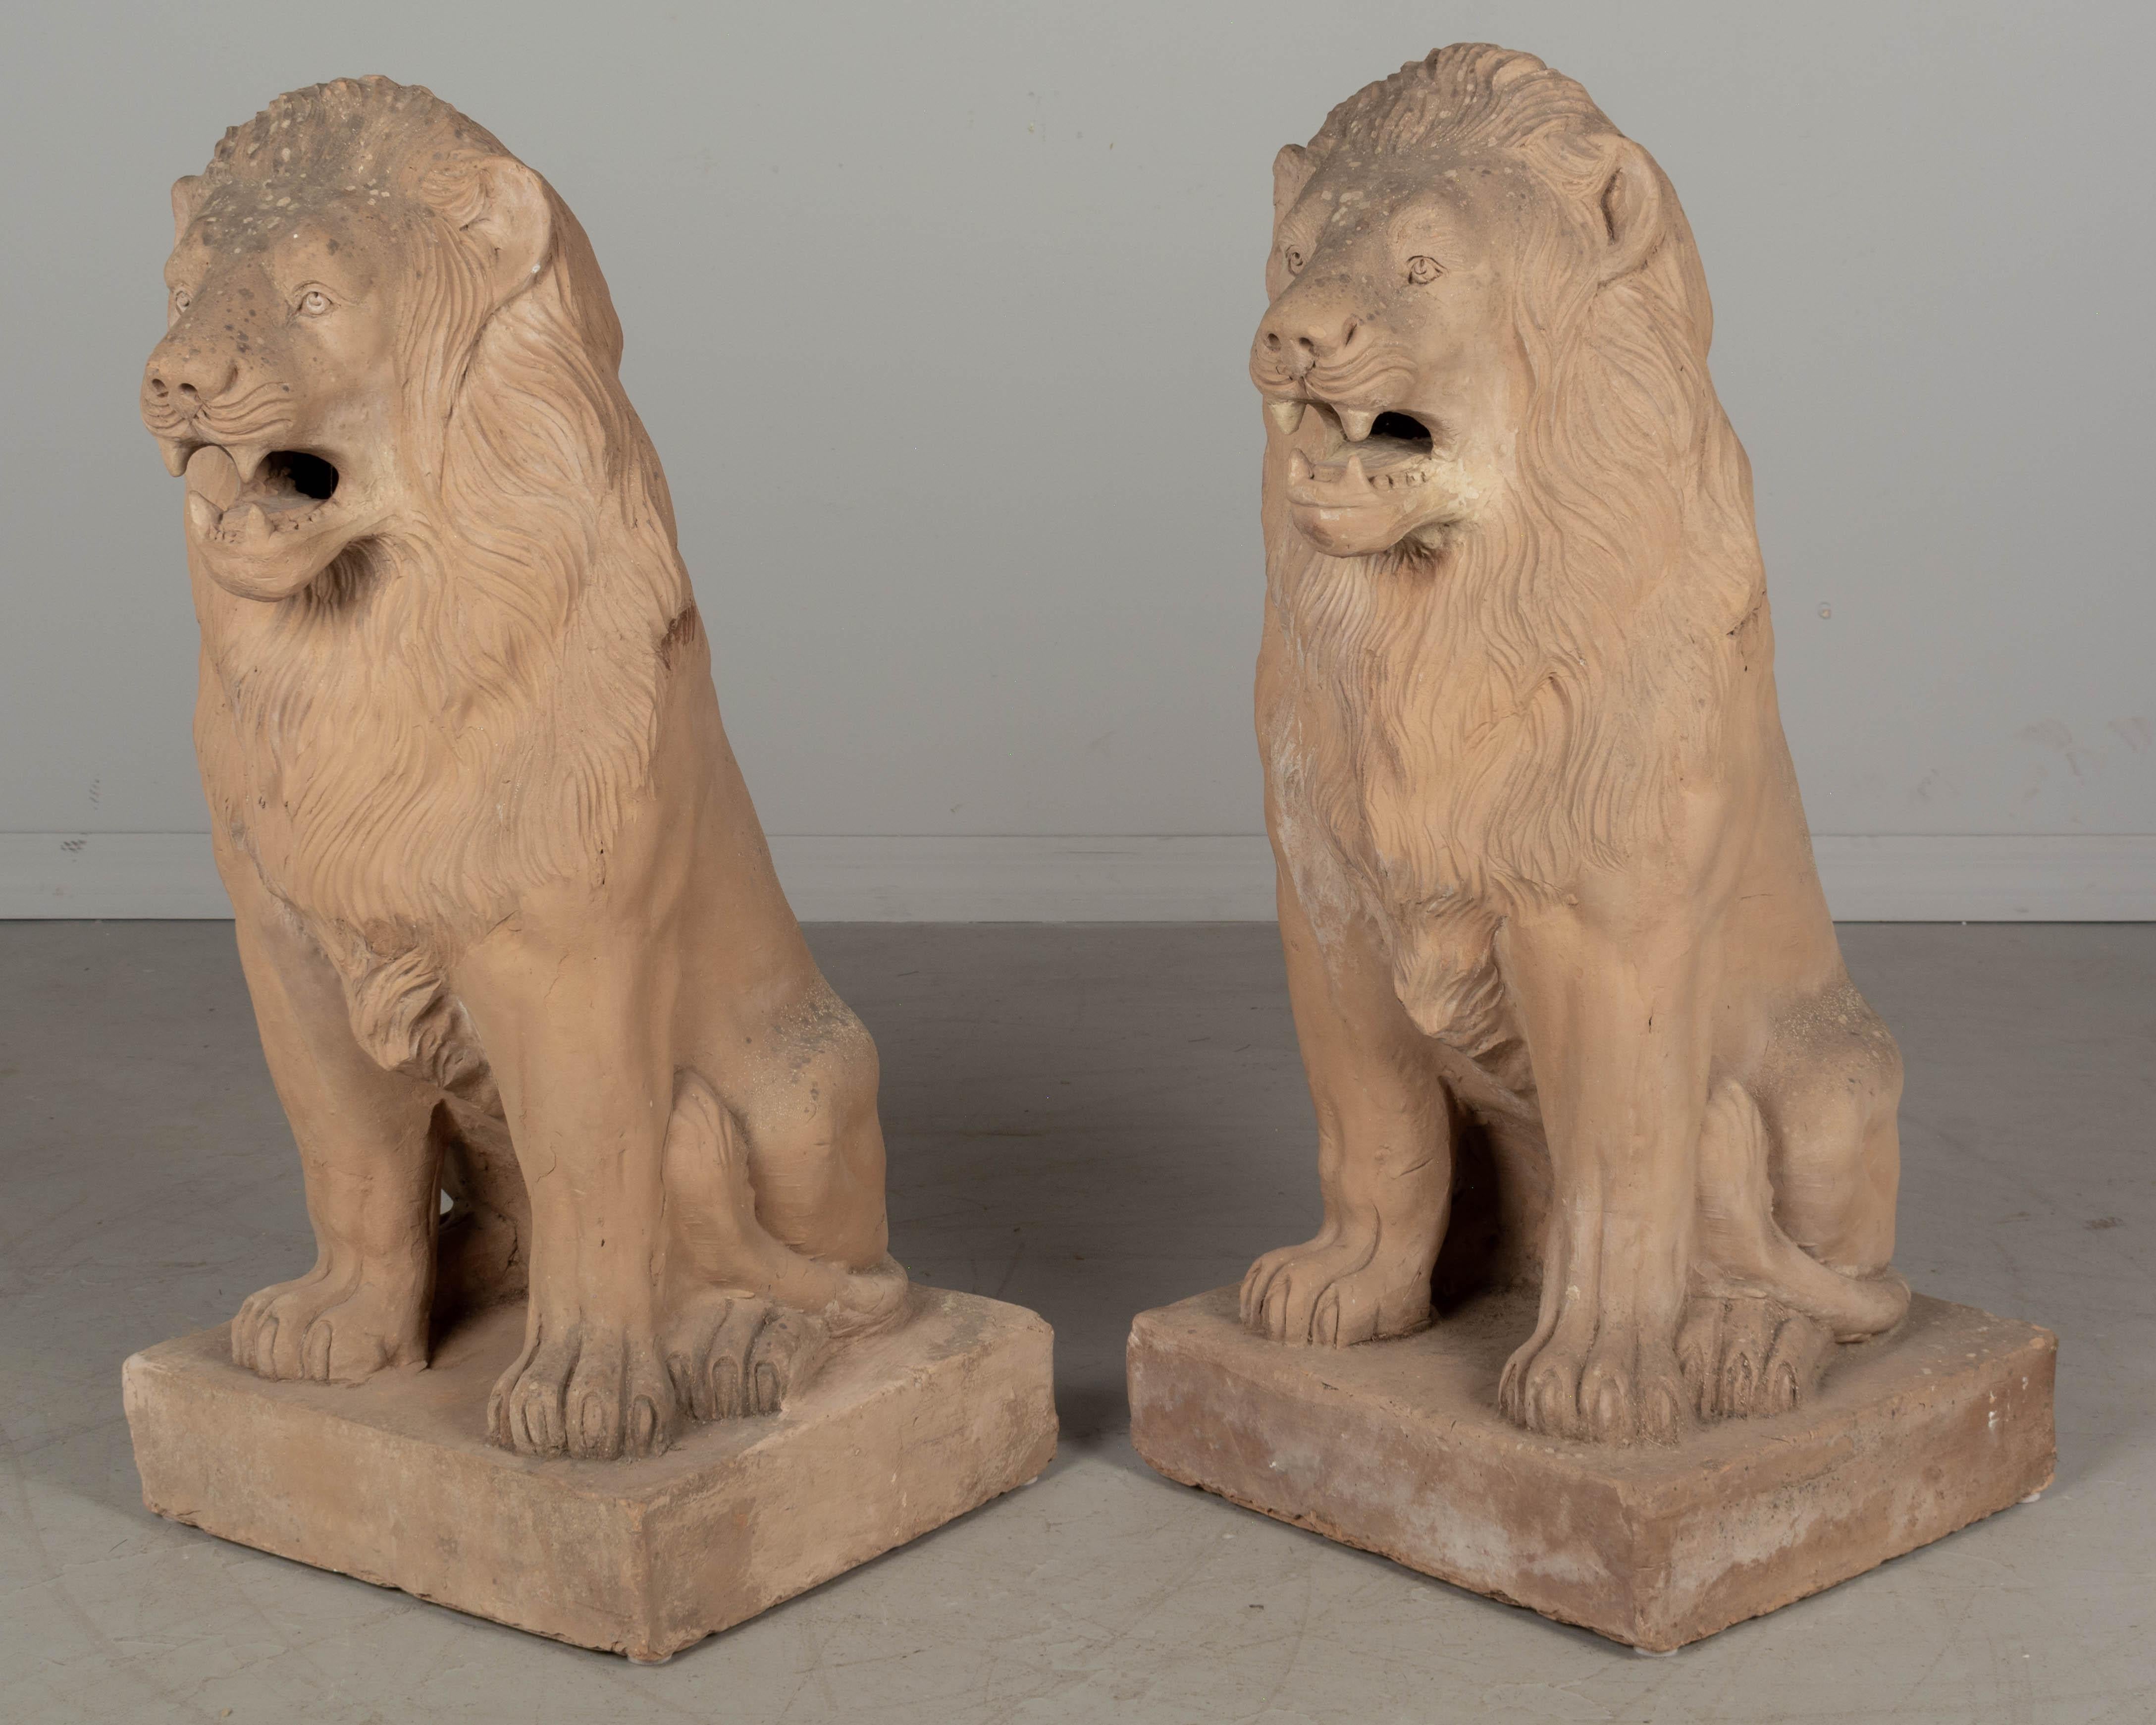 Paire de lions de jardin en terre cuite du début du XXe siècle, provenant d'Auch, dans le sud-ouest de la France. Quelques restaurations mineures au fil des ans. 
Circa 1900-1920.
Dimensions : 35 